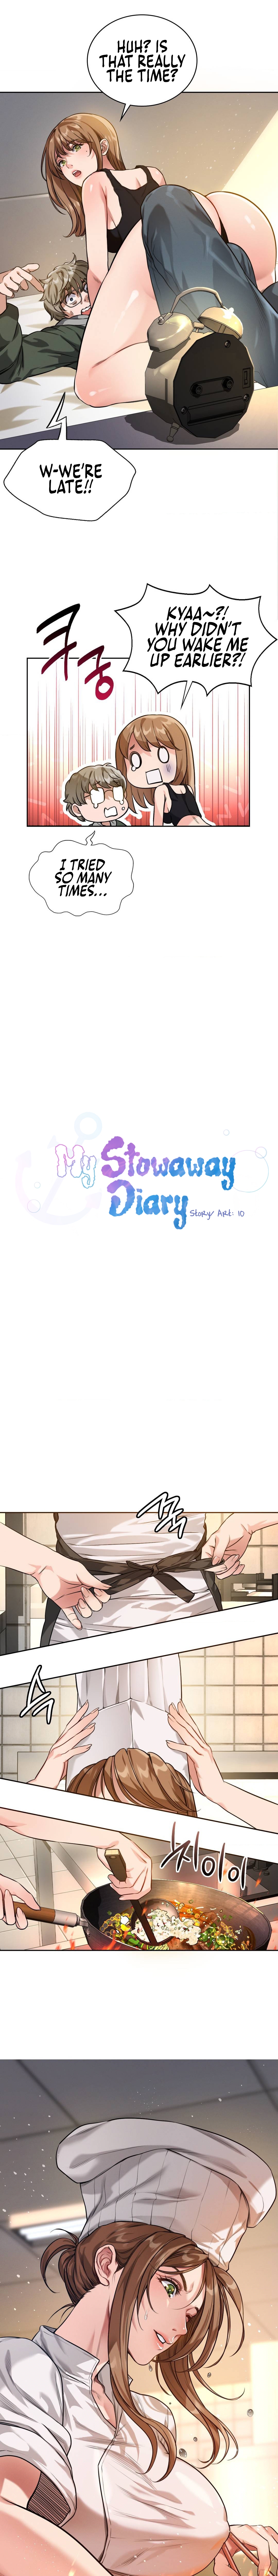 Read manhwa My Stowaway Diary  Chapter 1 - SauceManhwa.com